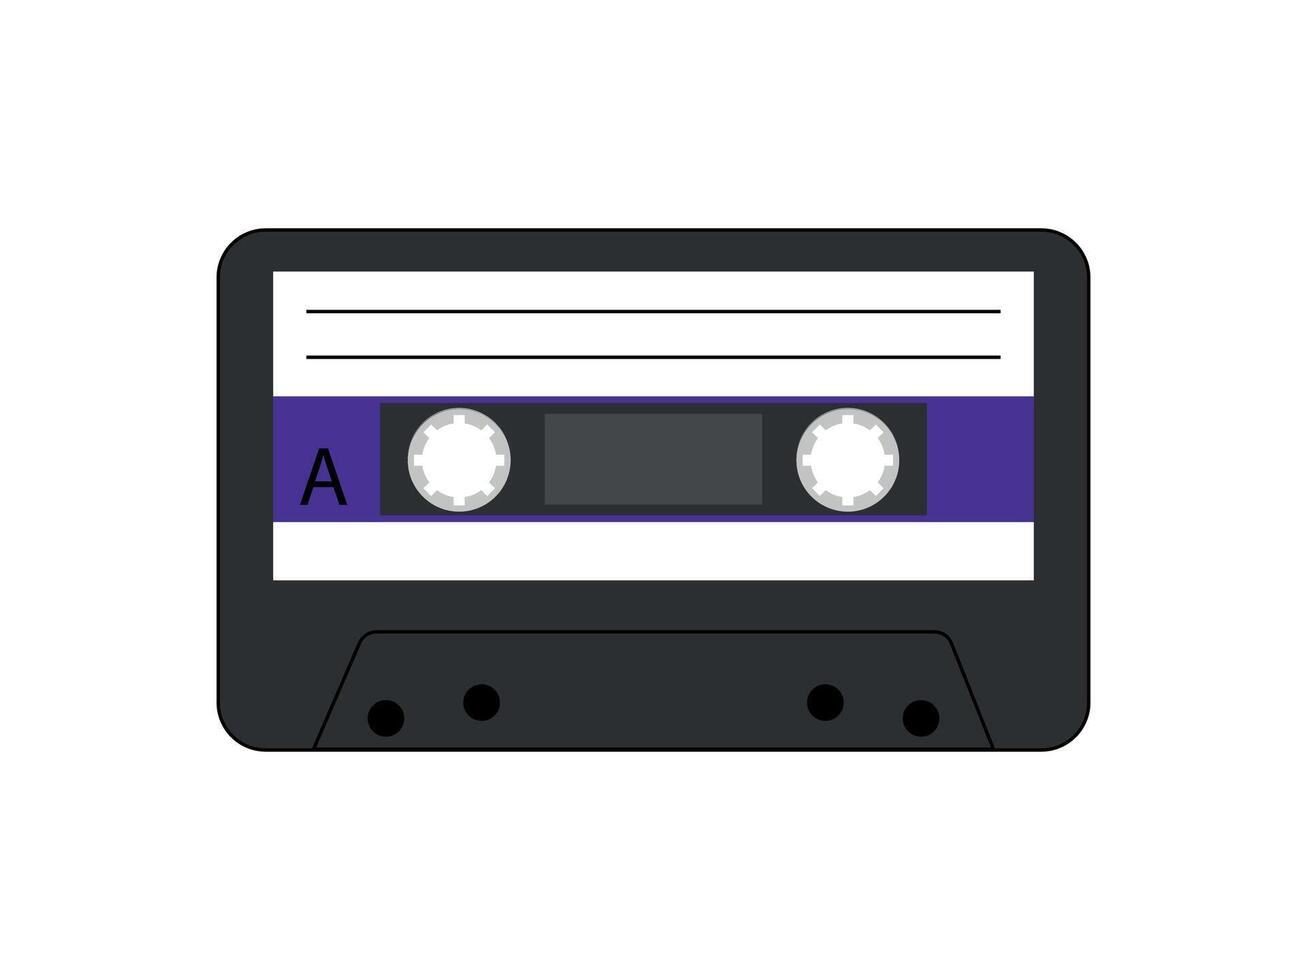 retro música casetes en el estilo de el 90s y años 2000 musical golpes de el años 90 casete cinta símbolo dibujado. ilustración vector